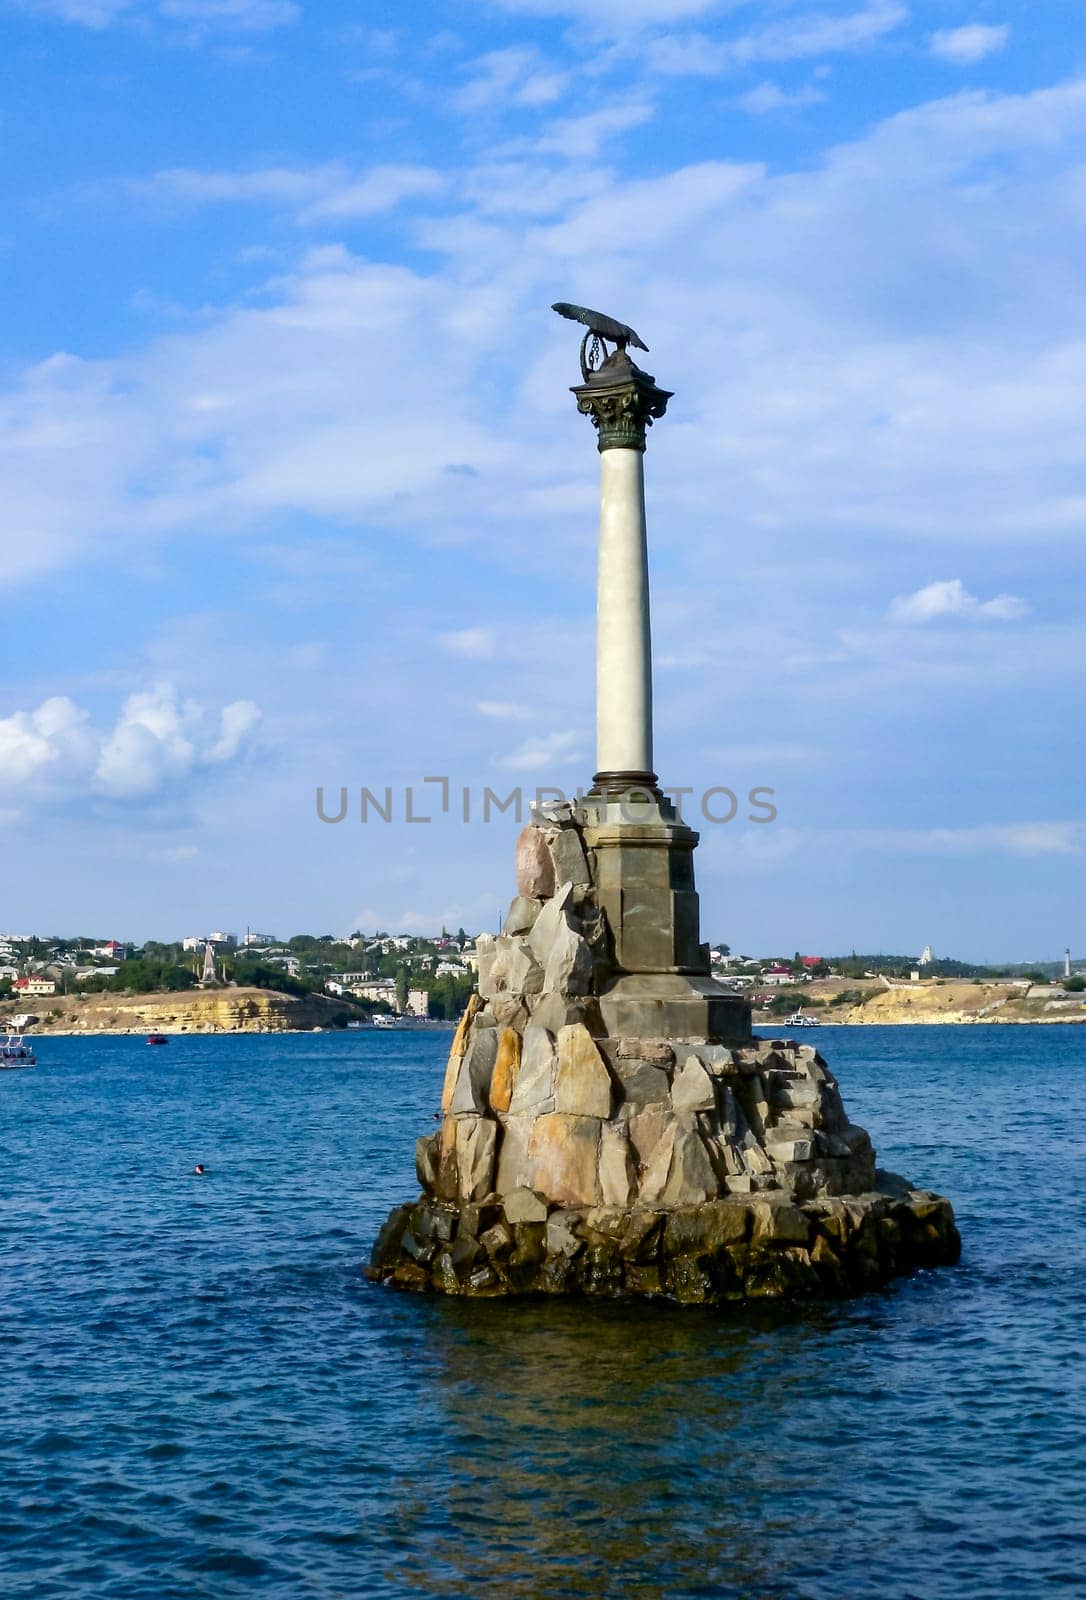 SEVASTOPOL, UKRAINE - JUNE 26, 2012: Monument to the Sunken Ships, Sevastopol